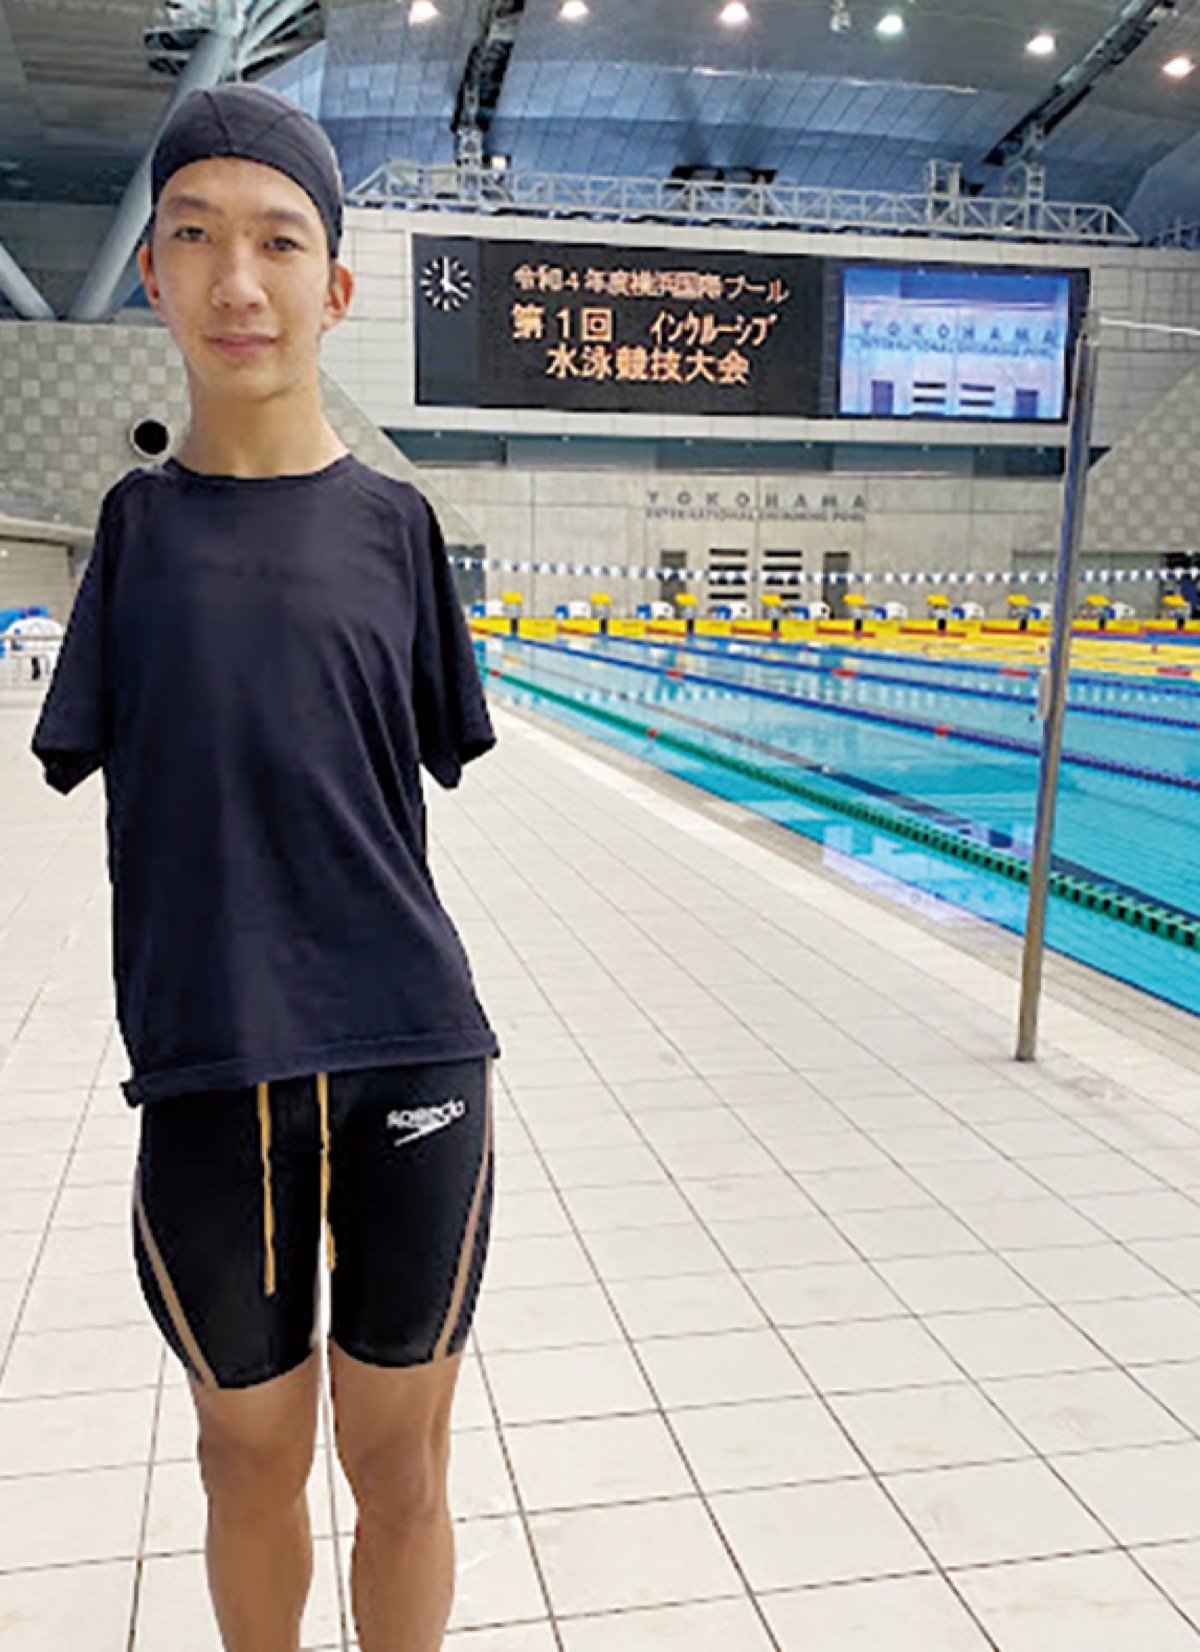 パラ水泳選手 田中映伍さんが200ｍメドレーで日本新 自己ベスト11秒縮める | 茅ヶ崎